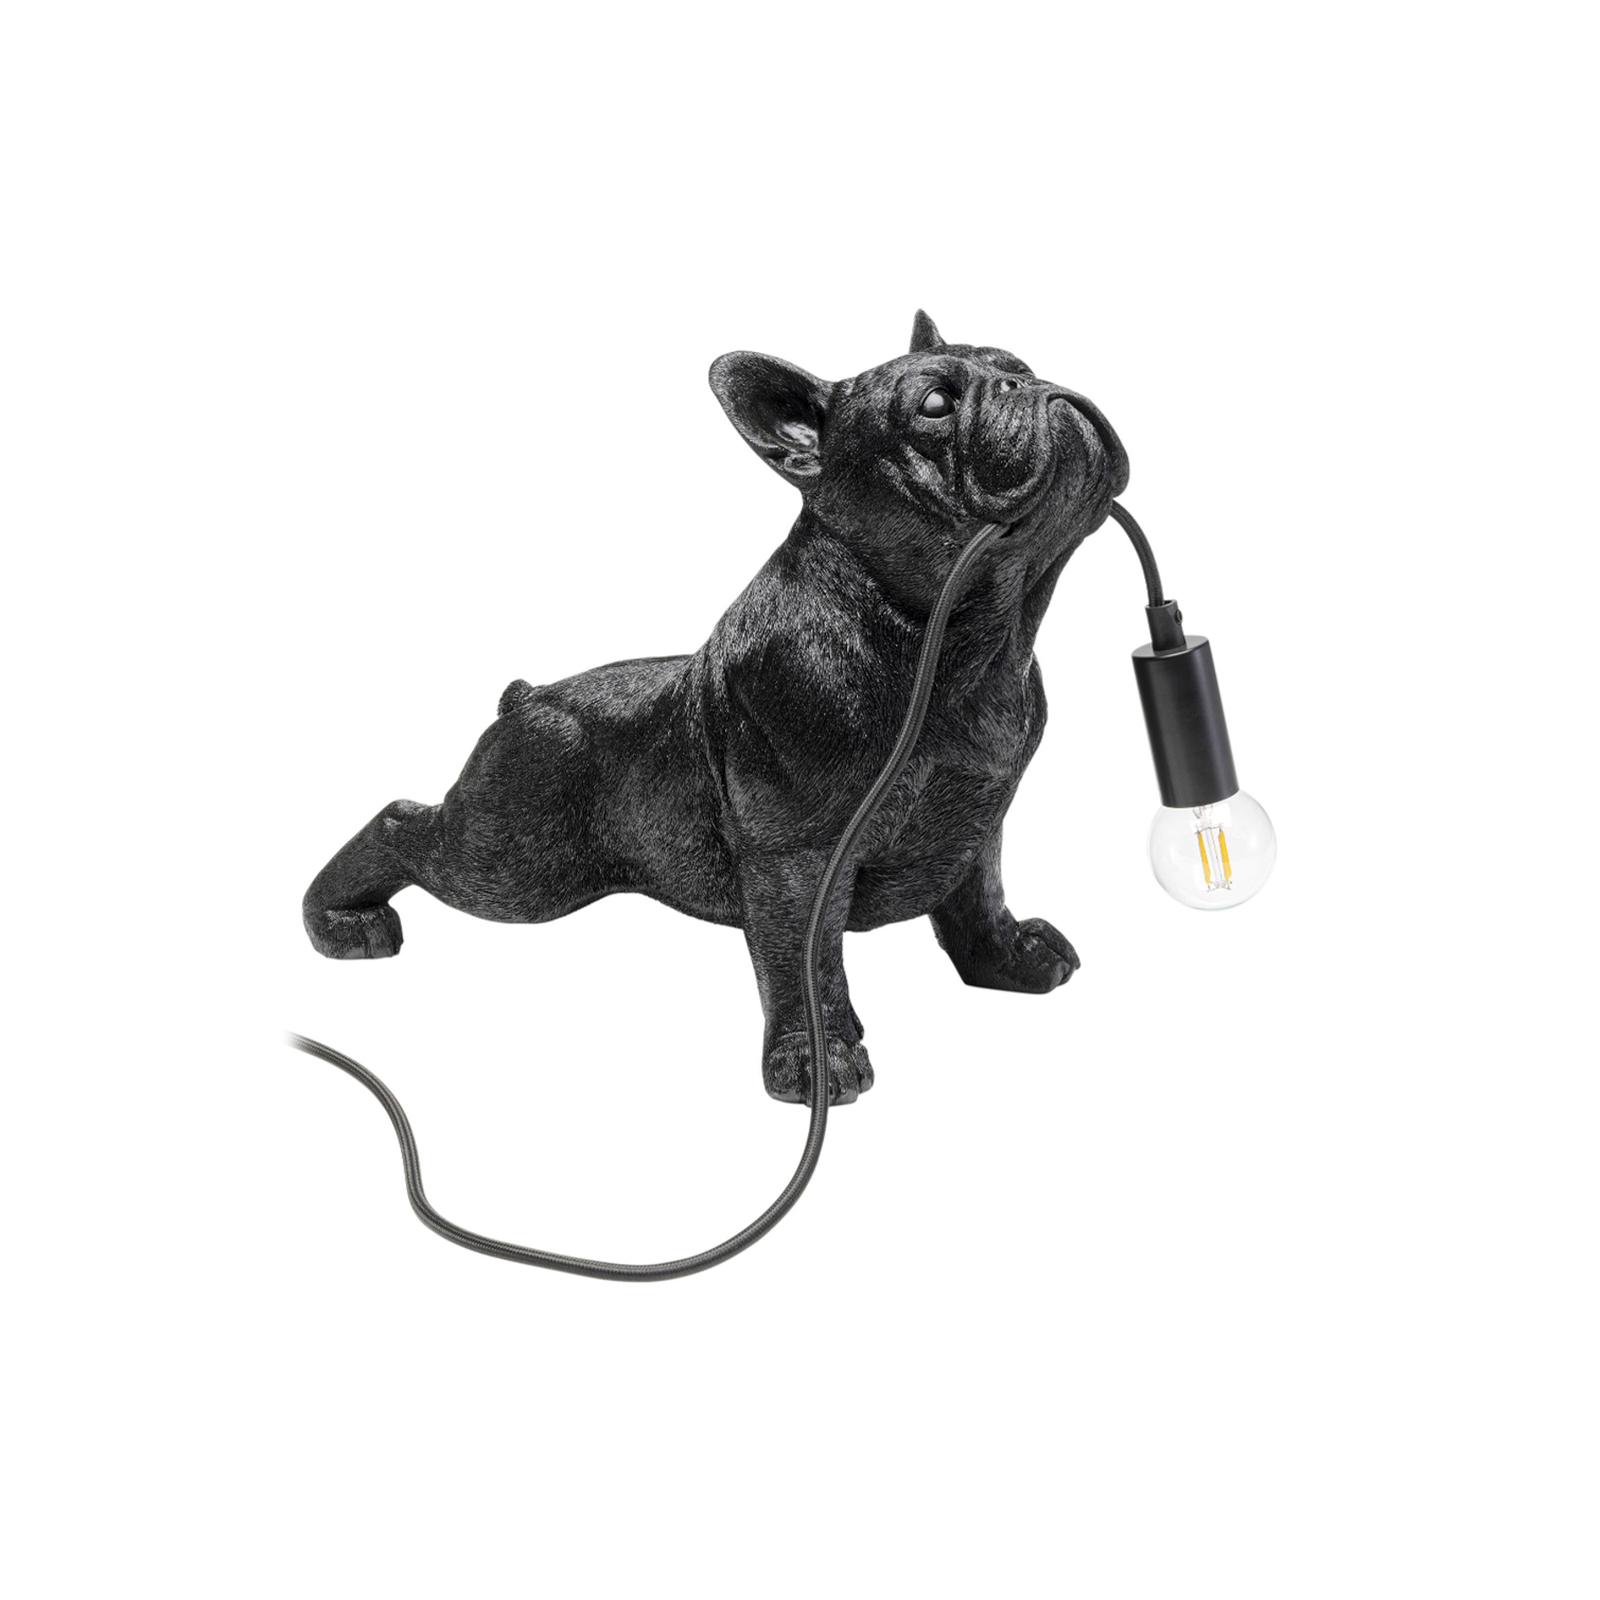 KARE Lampe à poser Toto, noir, résine synthétique, figurine de chien